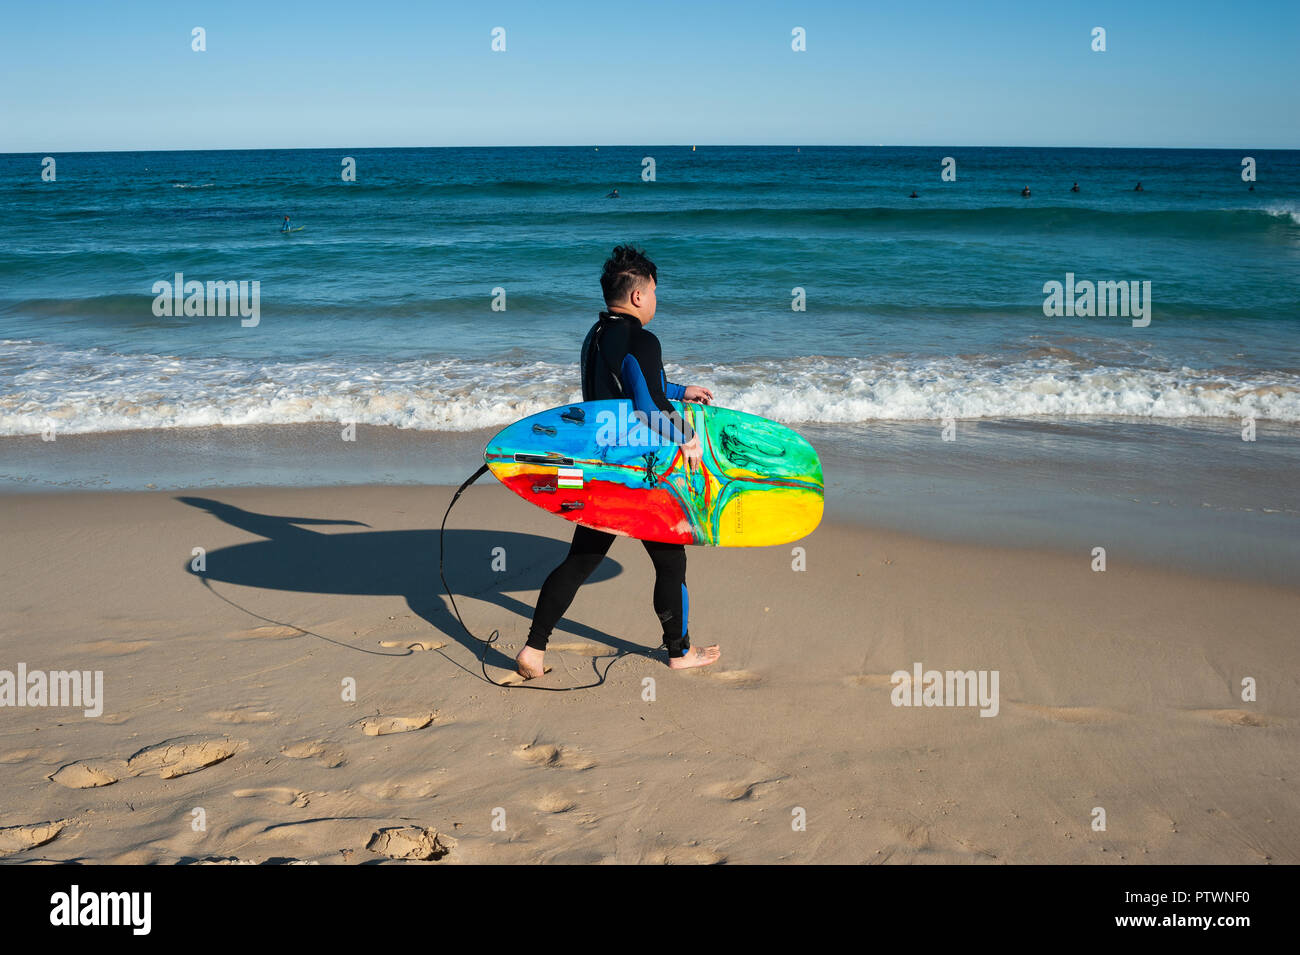 21.09.2018, Sydney, New South Wales, Australia - un surfista es visto sosteniendo su tabla de surf mientras camina hacia el mar en la playa de Bondi. Foto de stock